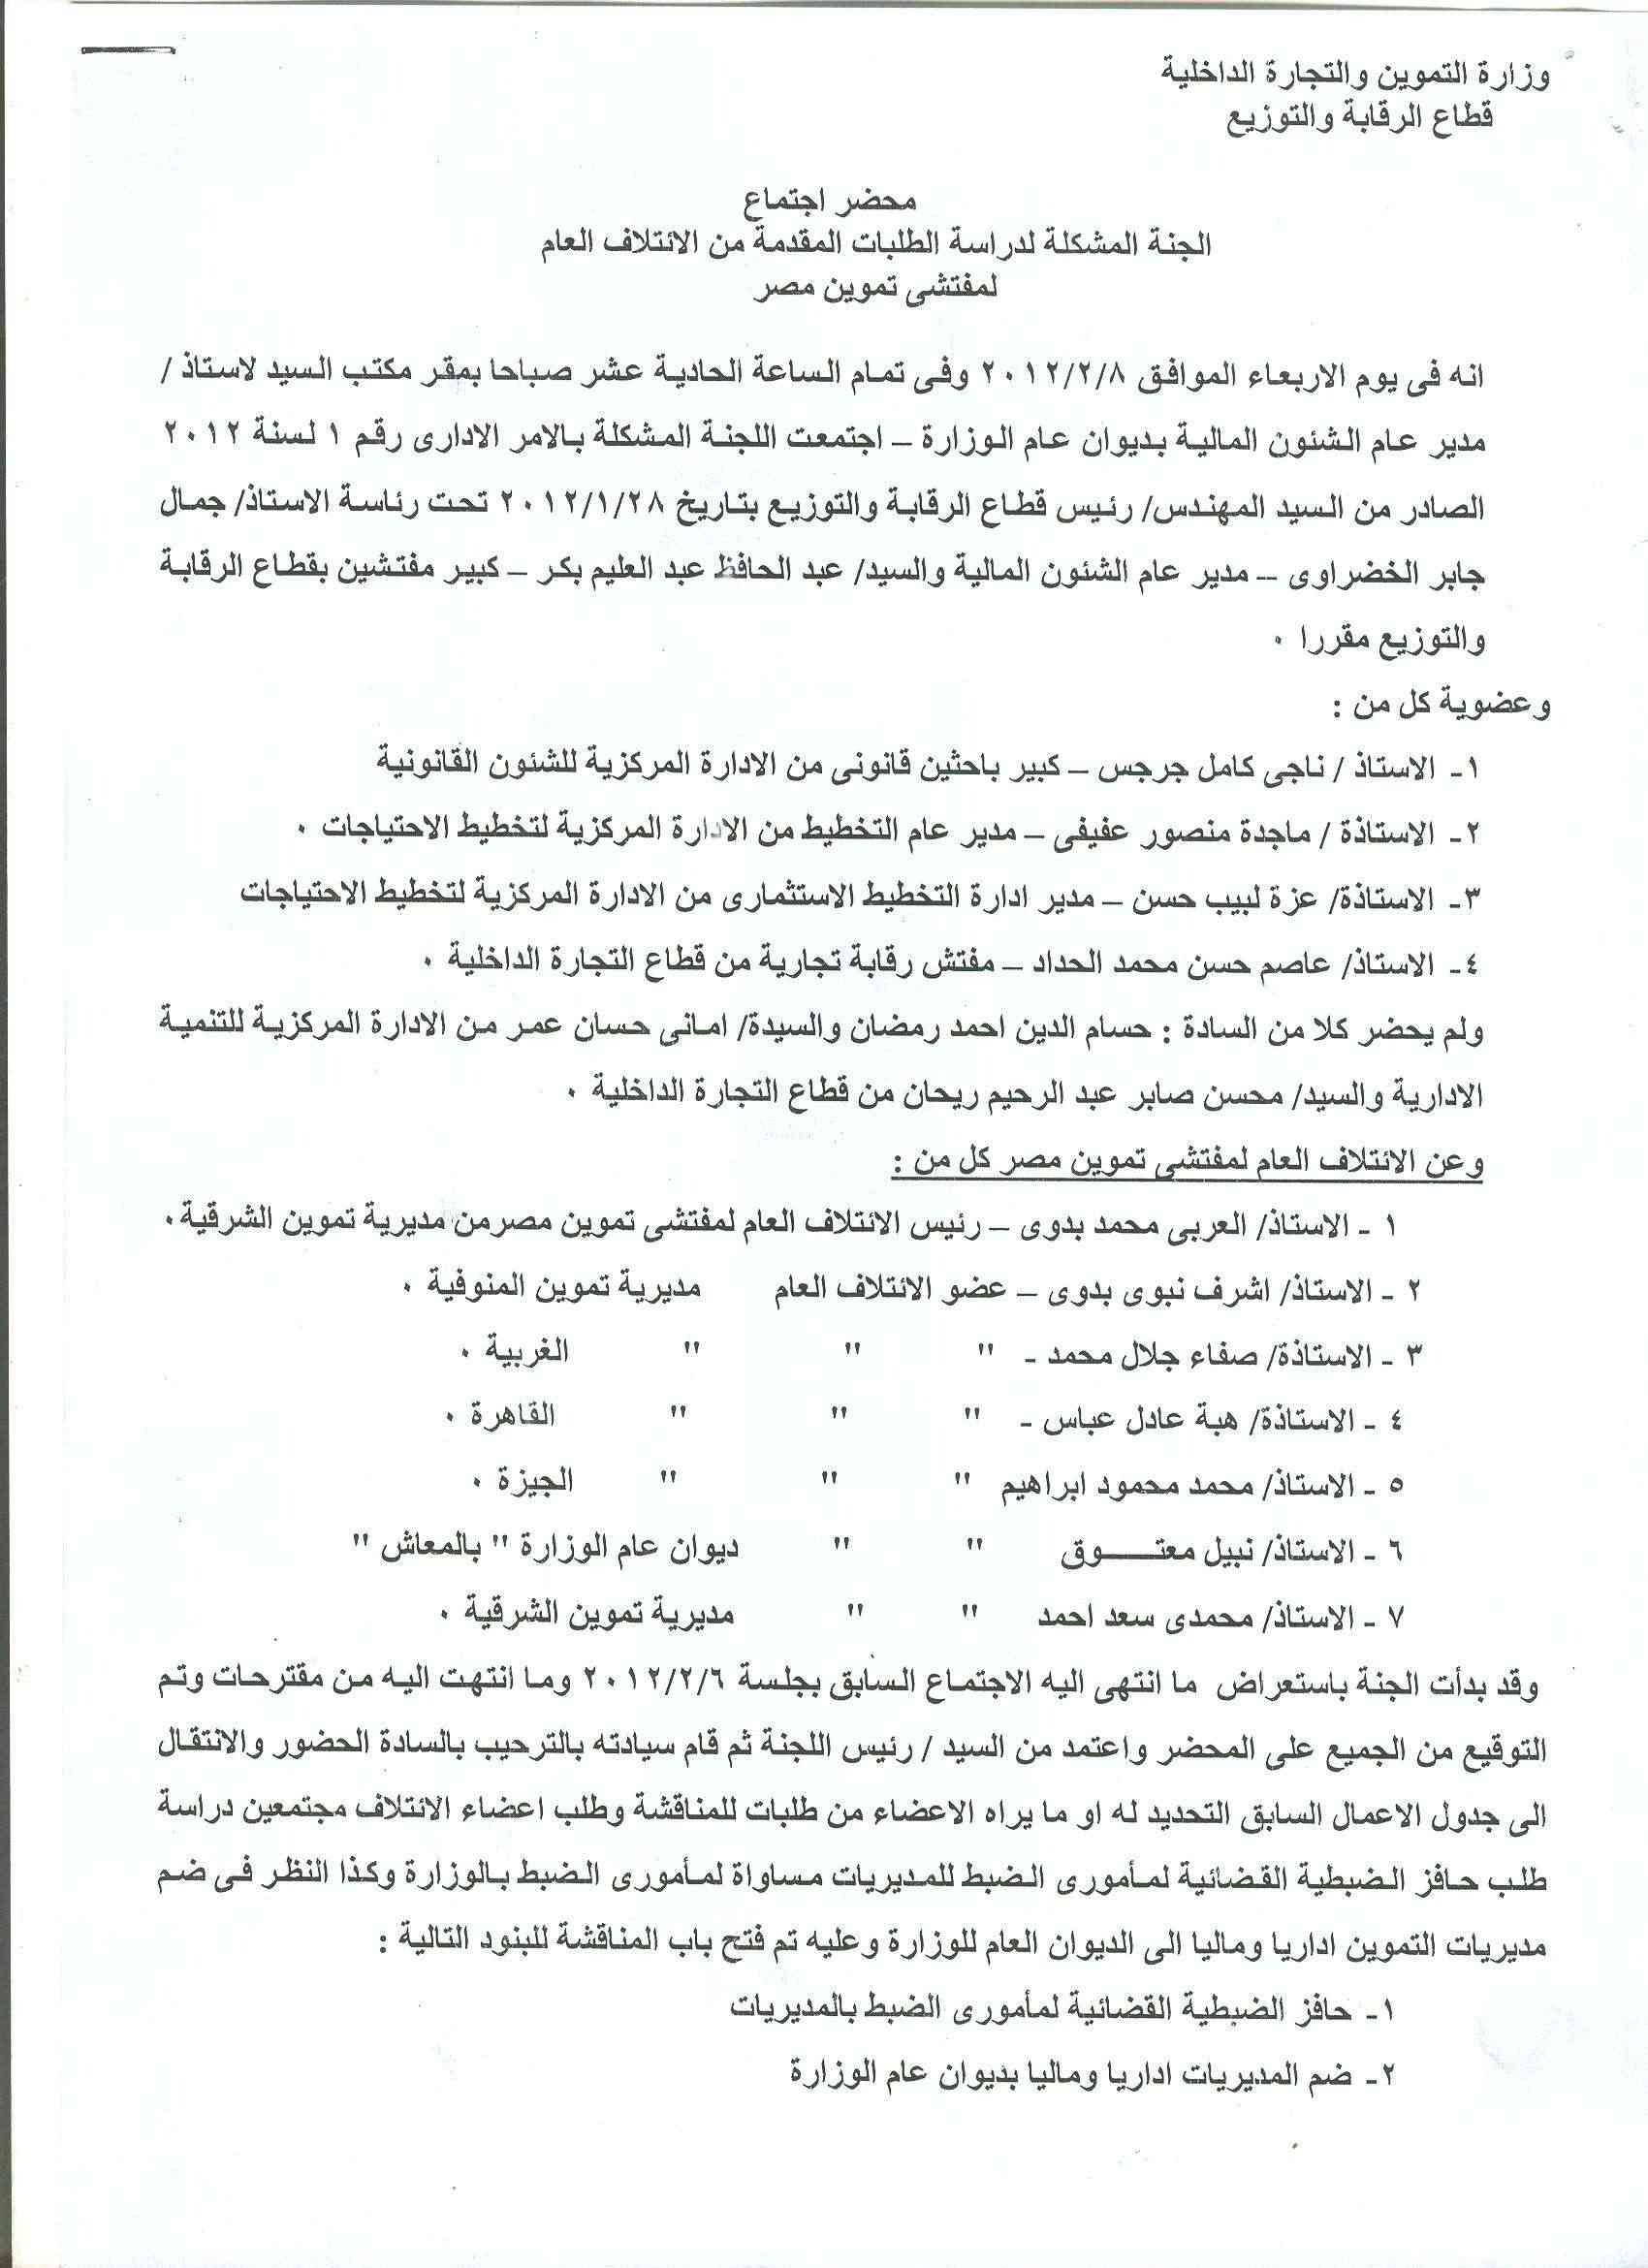 أعمال لجنة الإئتلاف العام للعاملين بتموين مصر بالوزاره خلال شهر فبراير 2012 8-110